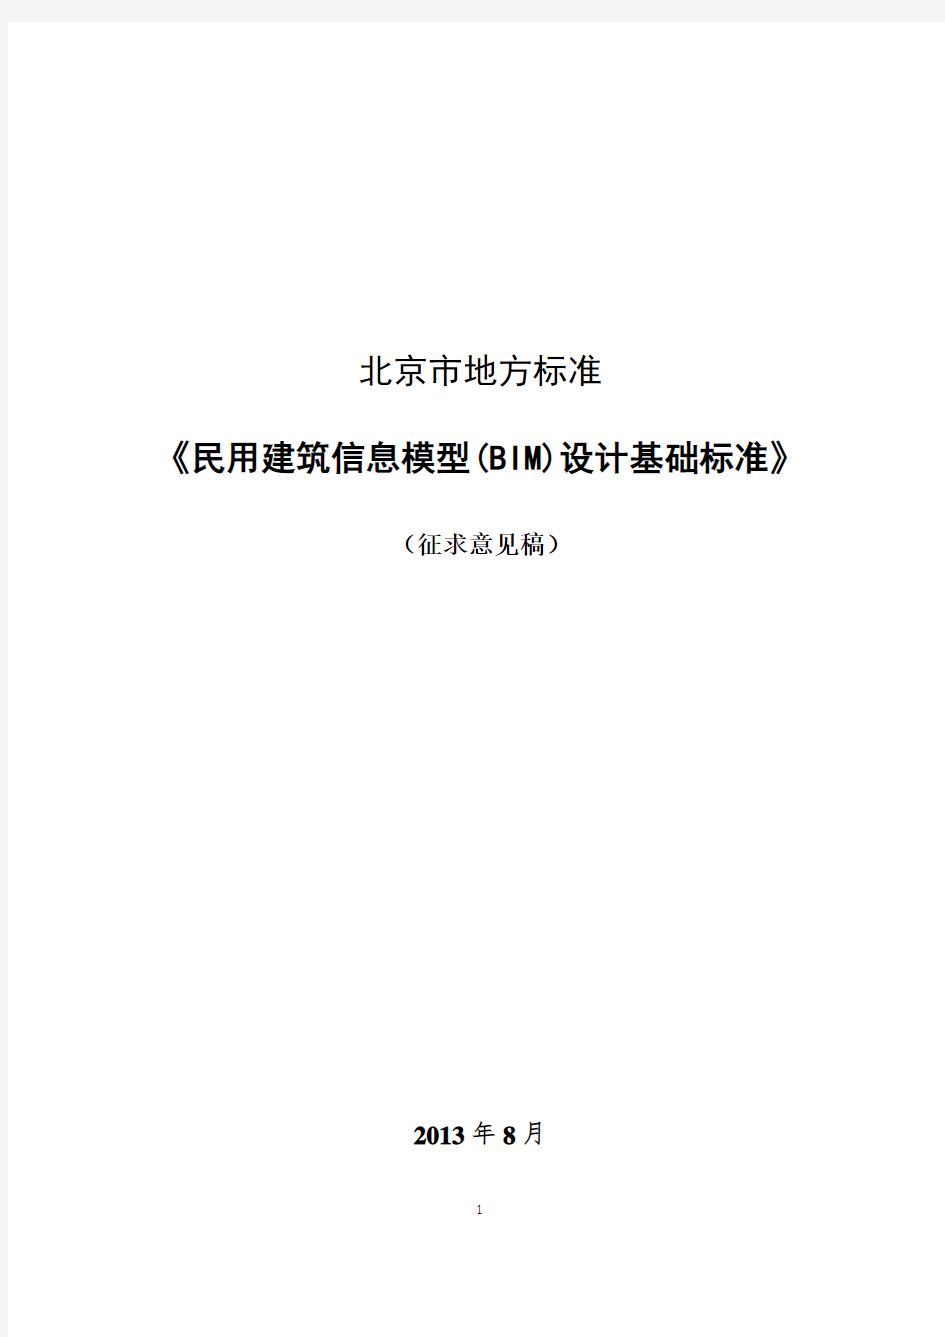 北京市地方标准+-+民用建筑信息模型(BIM)设计基础标准(意见征集稿).pdf